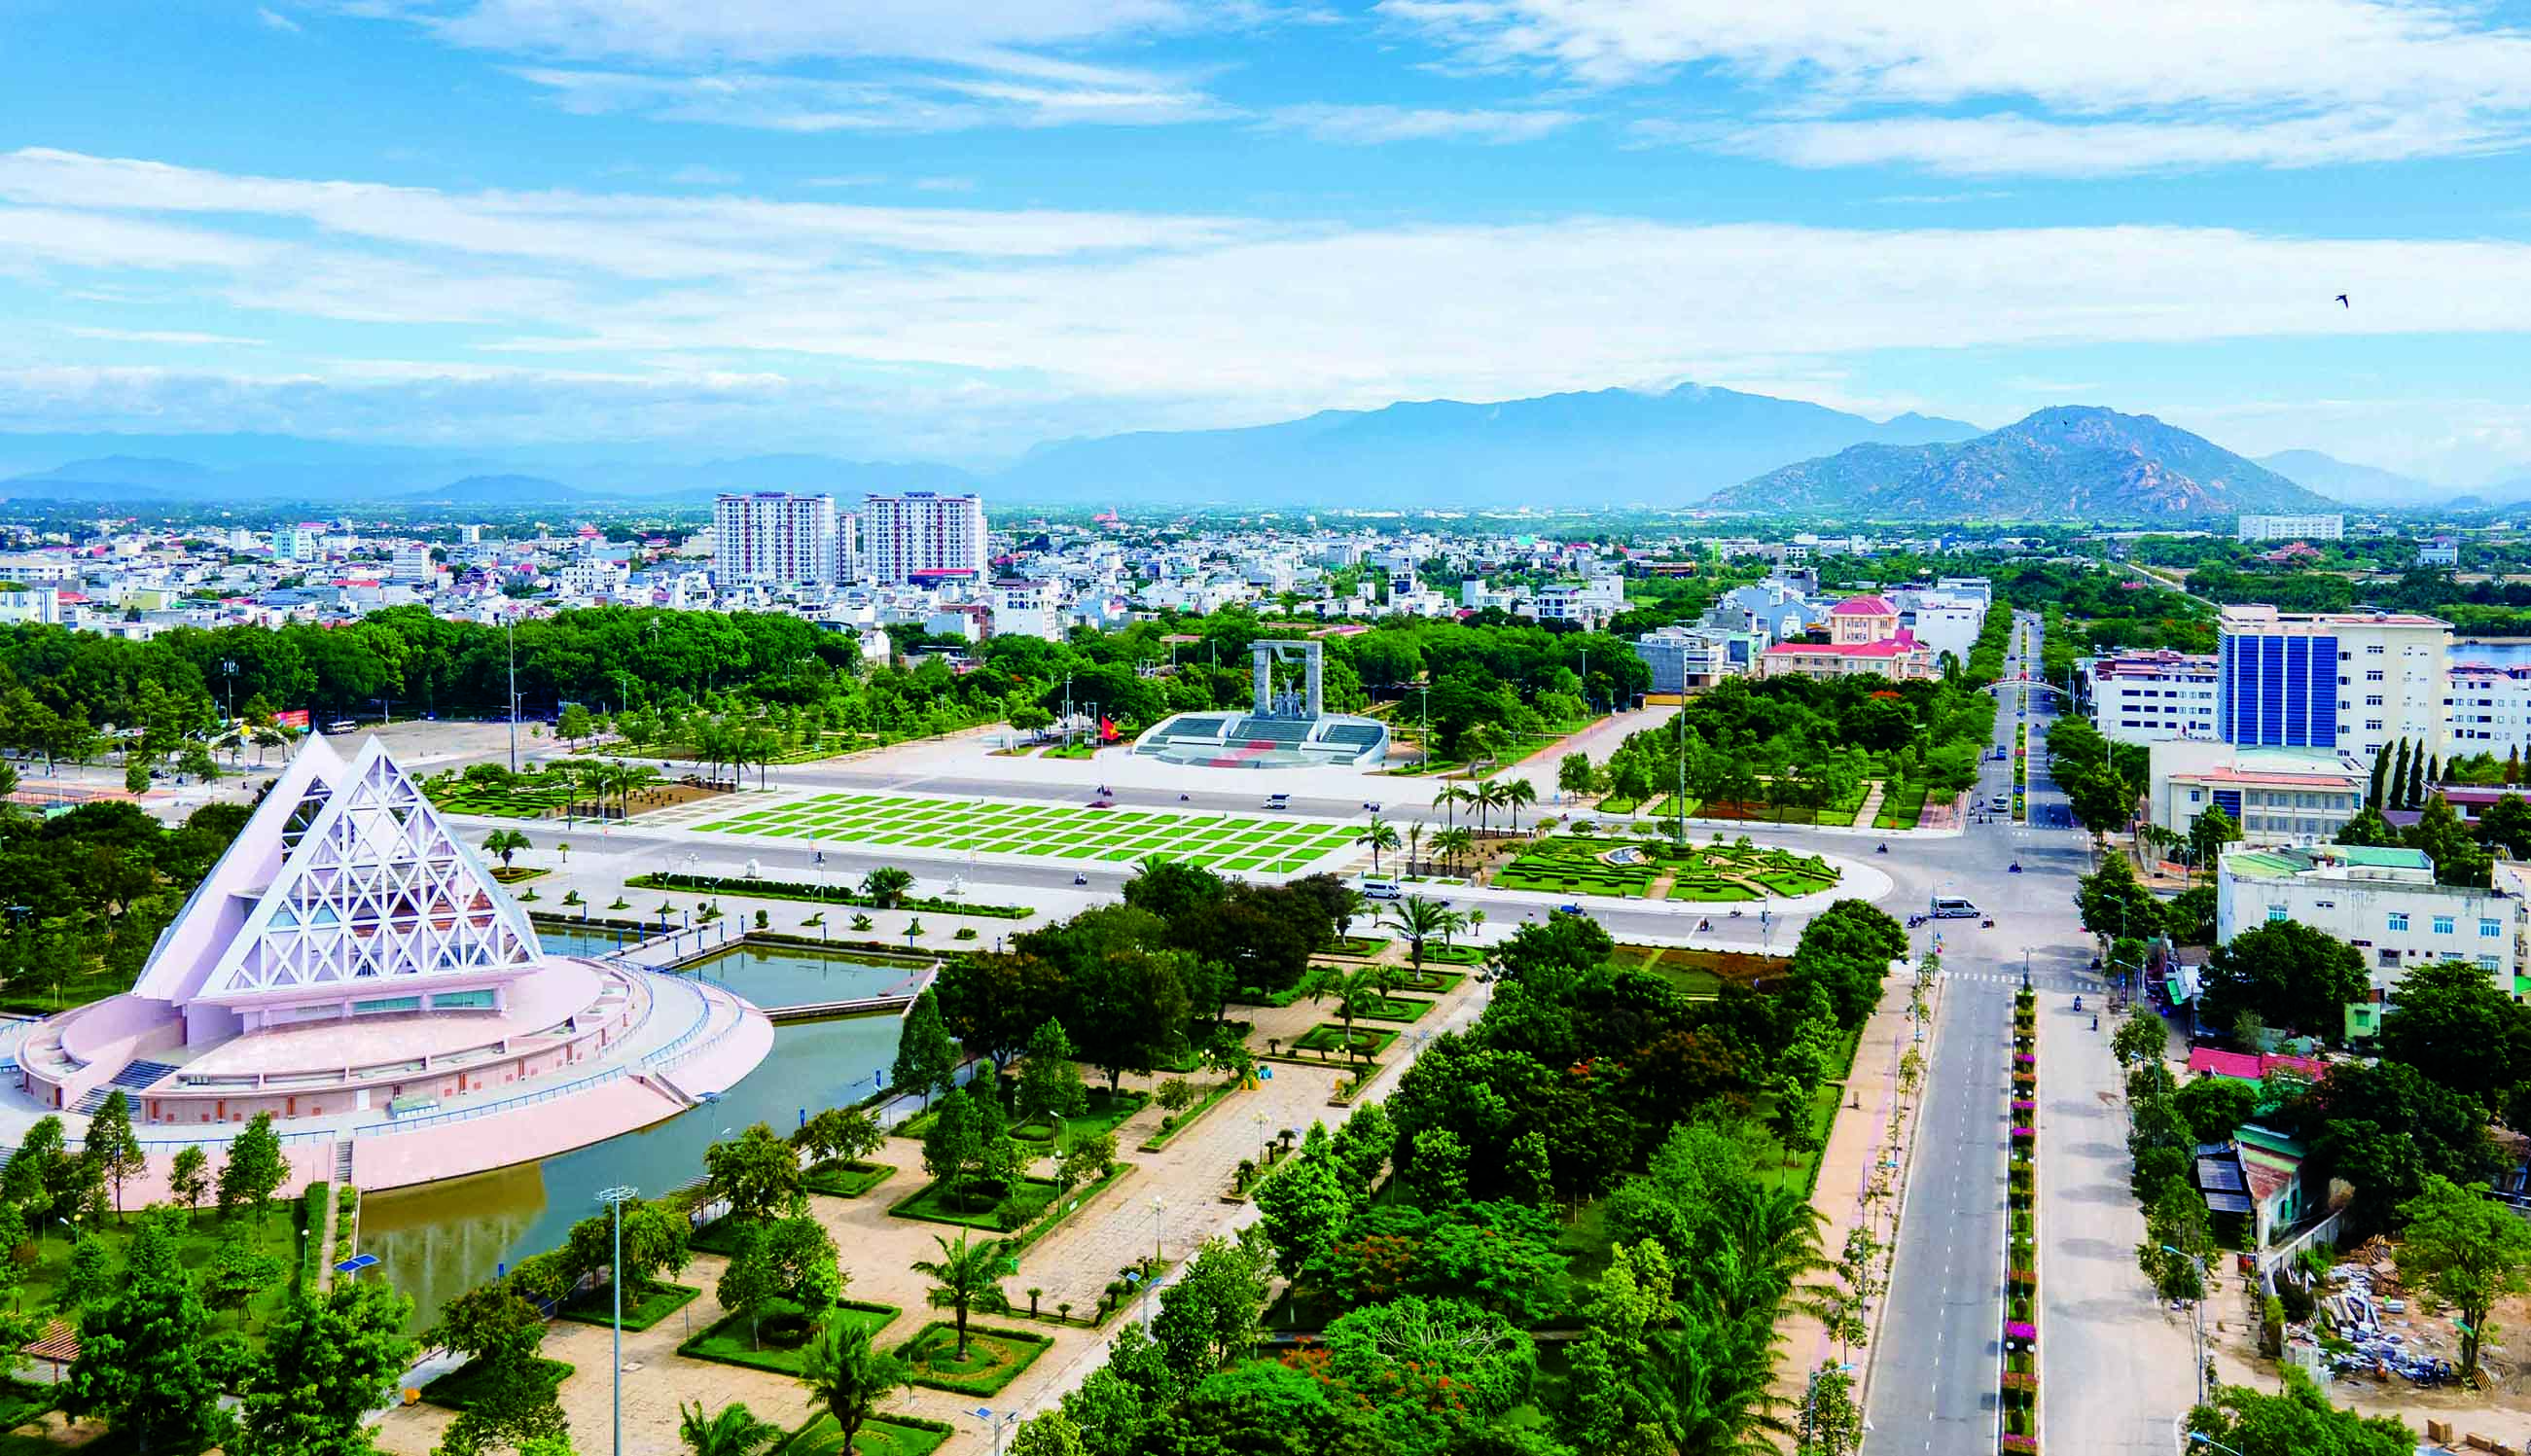 Quảng trường 16-4, Trung tâm TP. Phan Rang - Tháp Chàm, tỉnh Ninh Thuận.